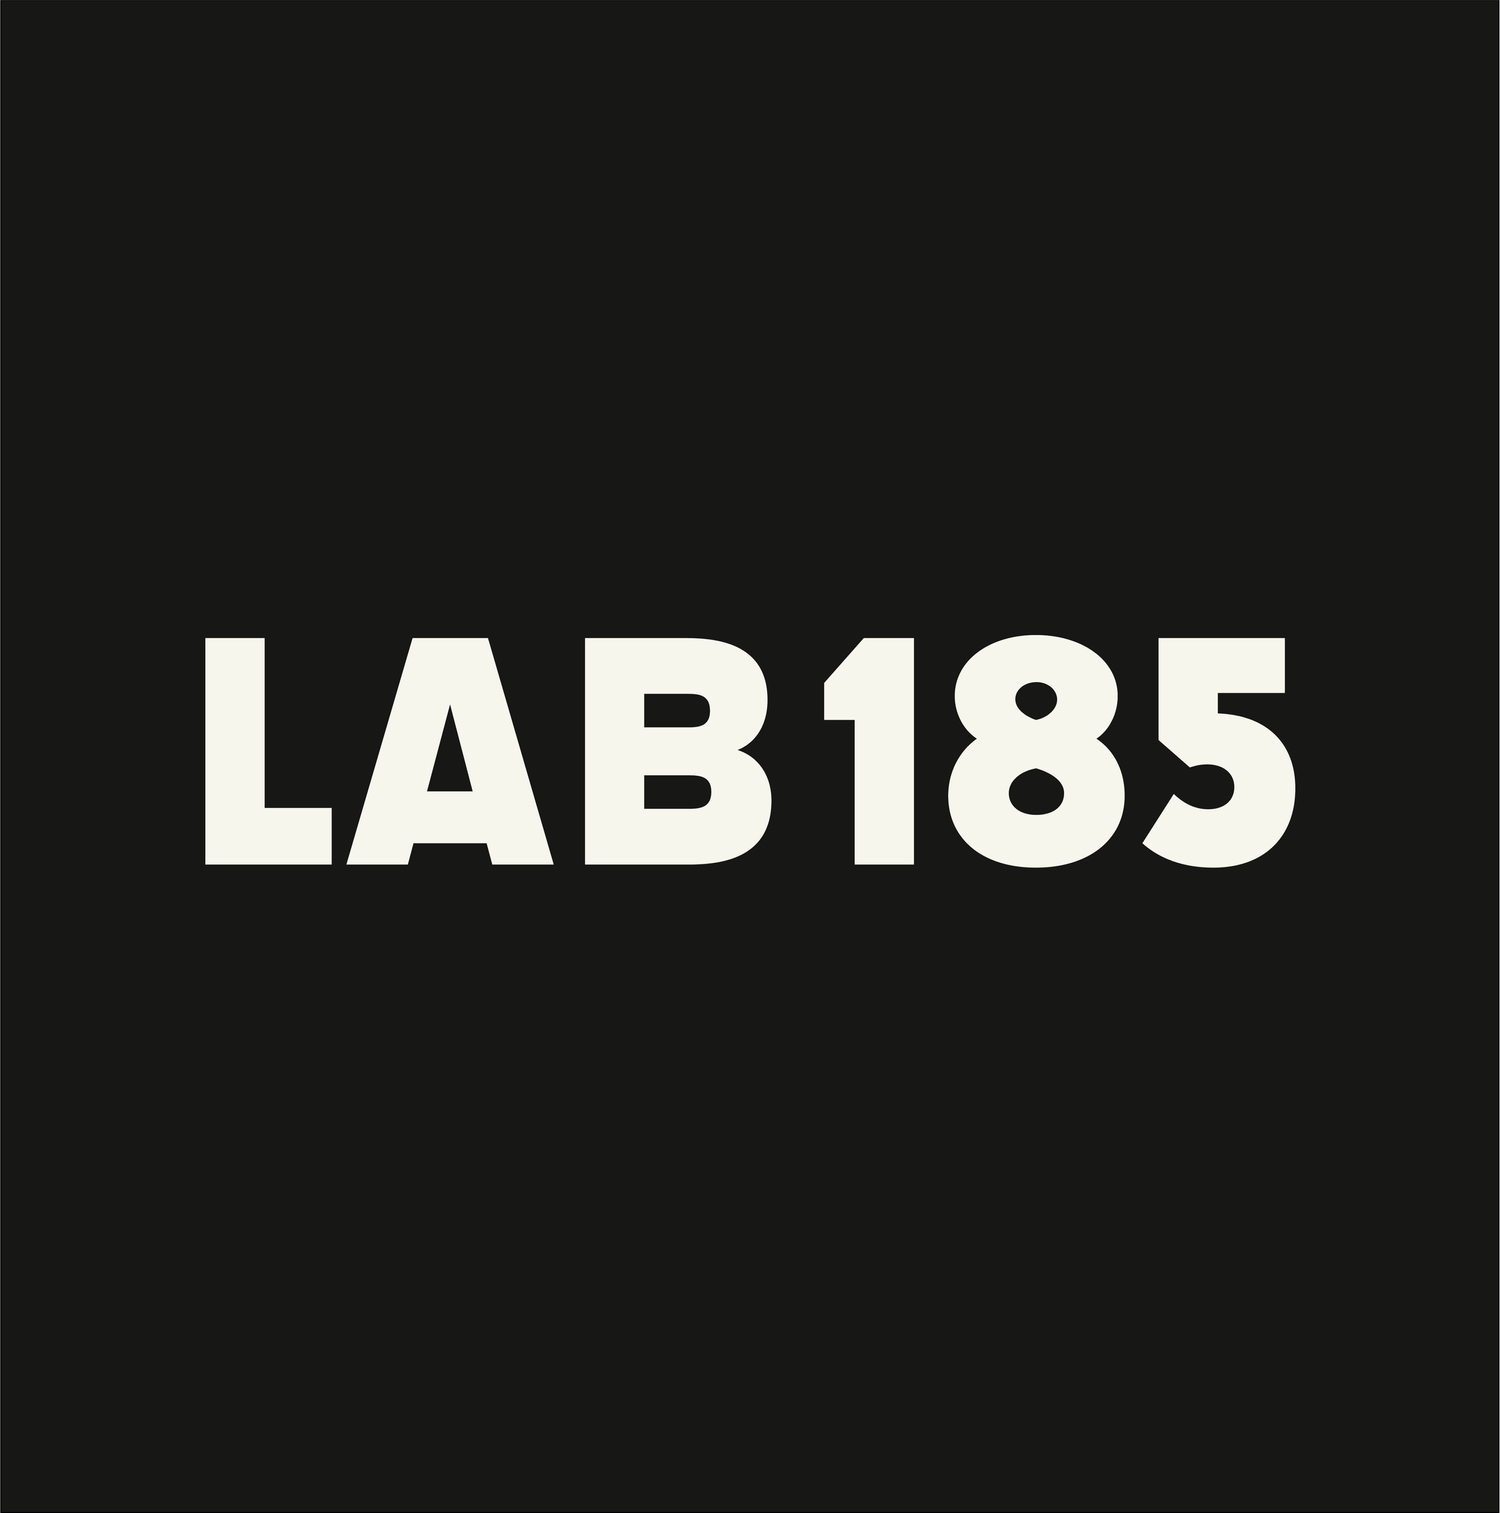 LAB185